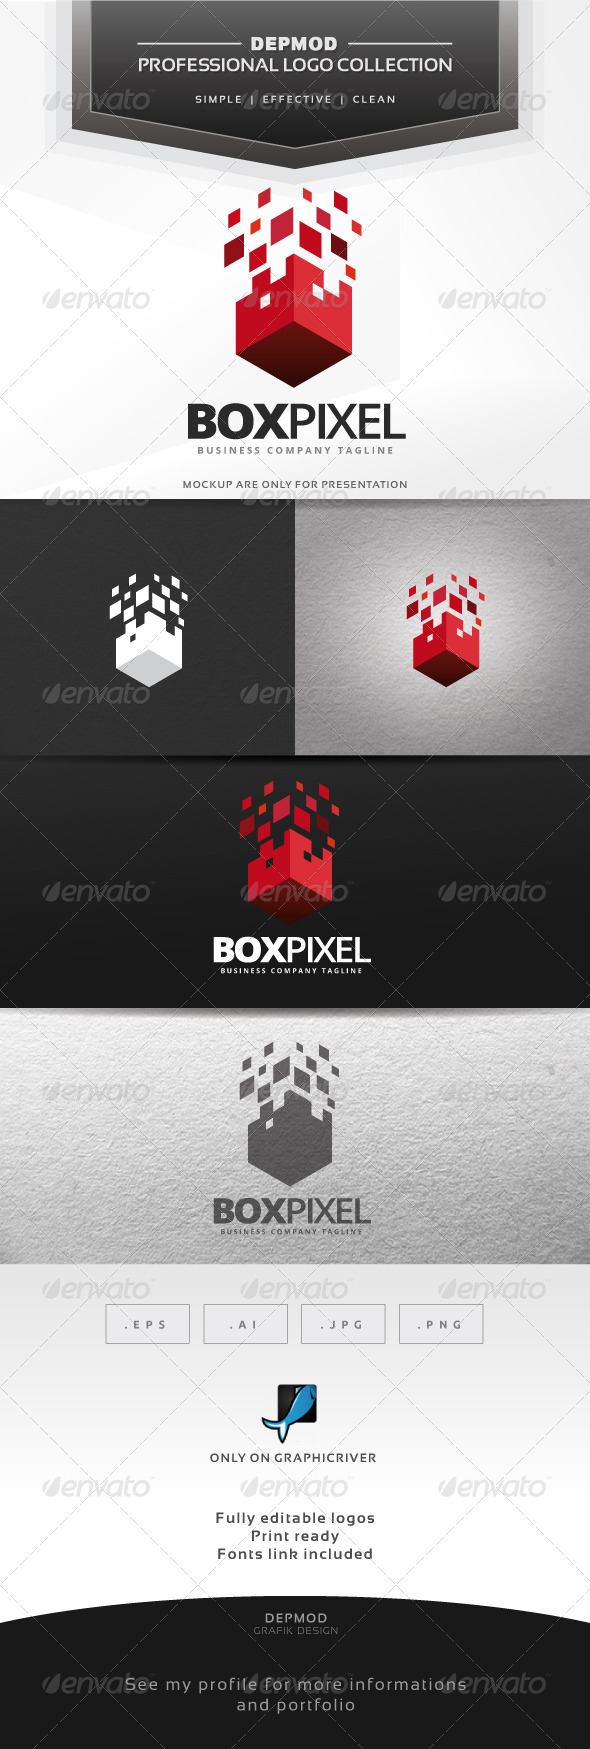 Box Pixel Logo